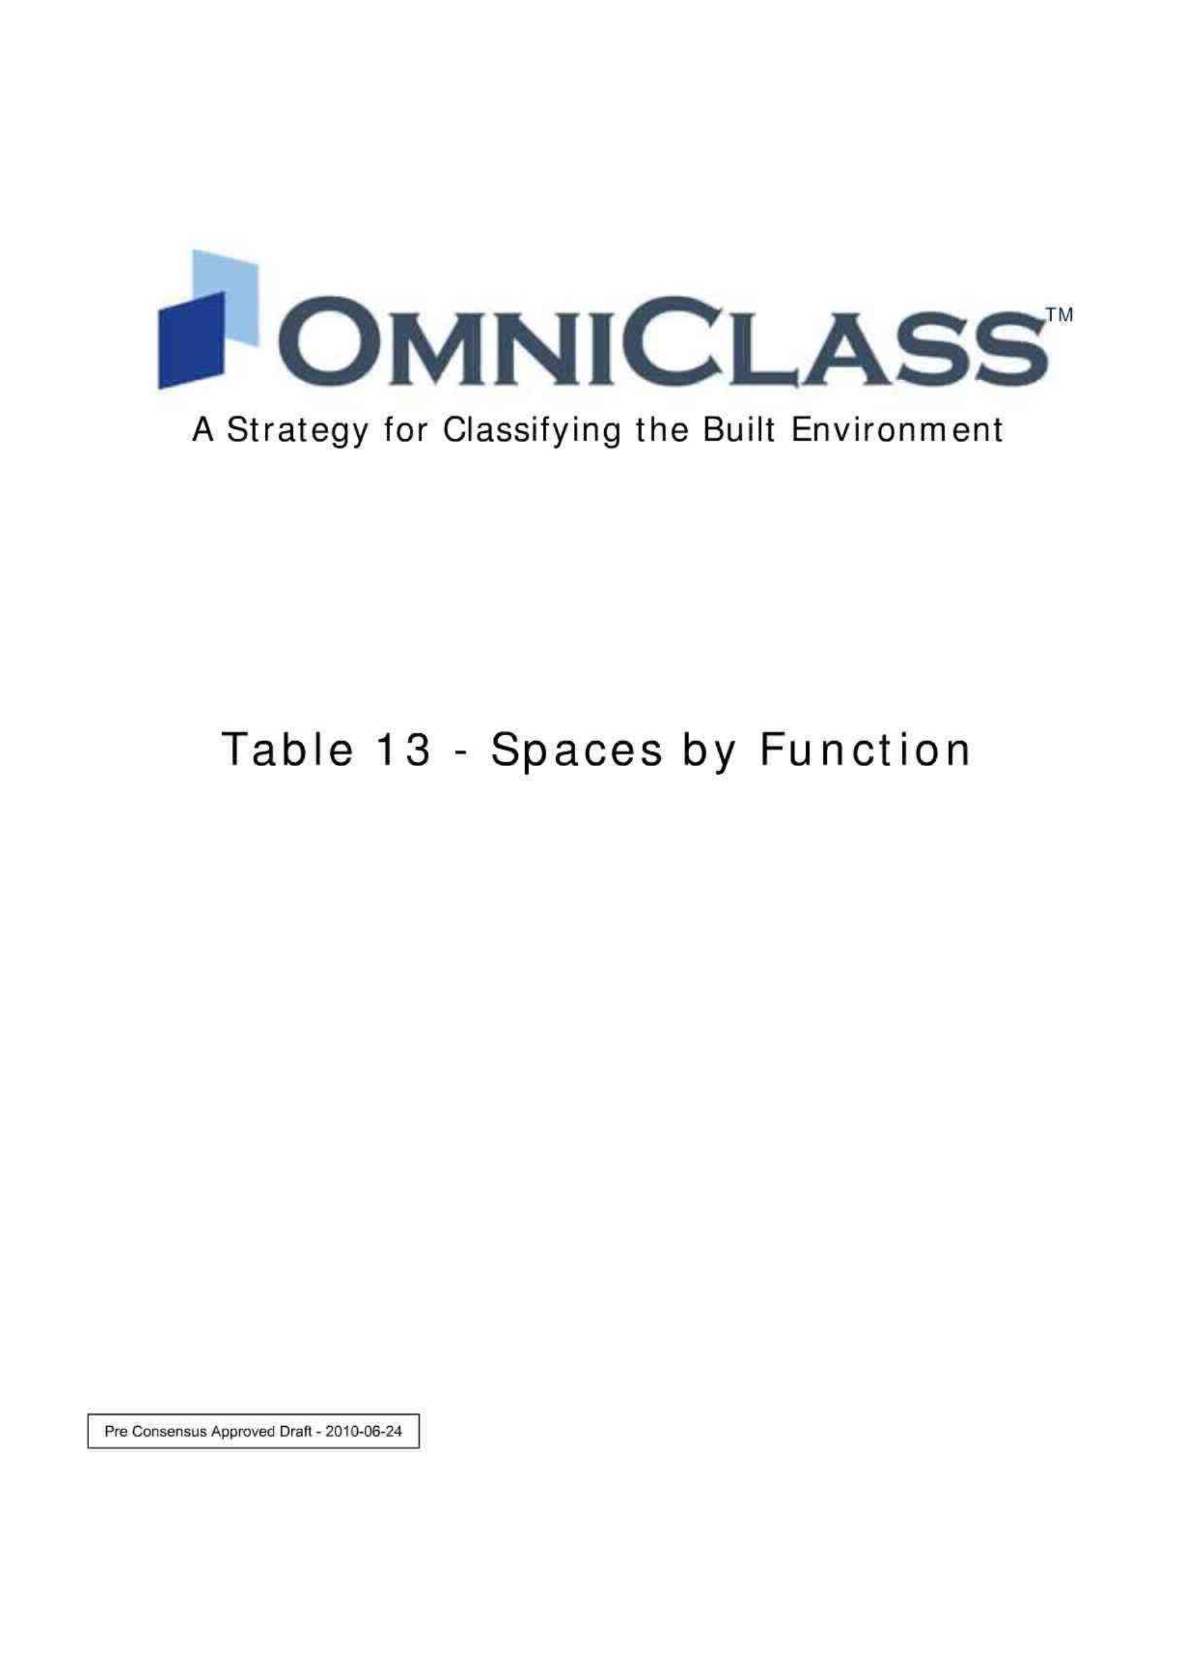 CSI编制的建筑业分类体系OmniClass Tables 13-图一